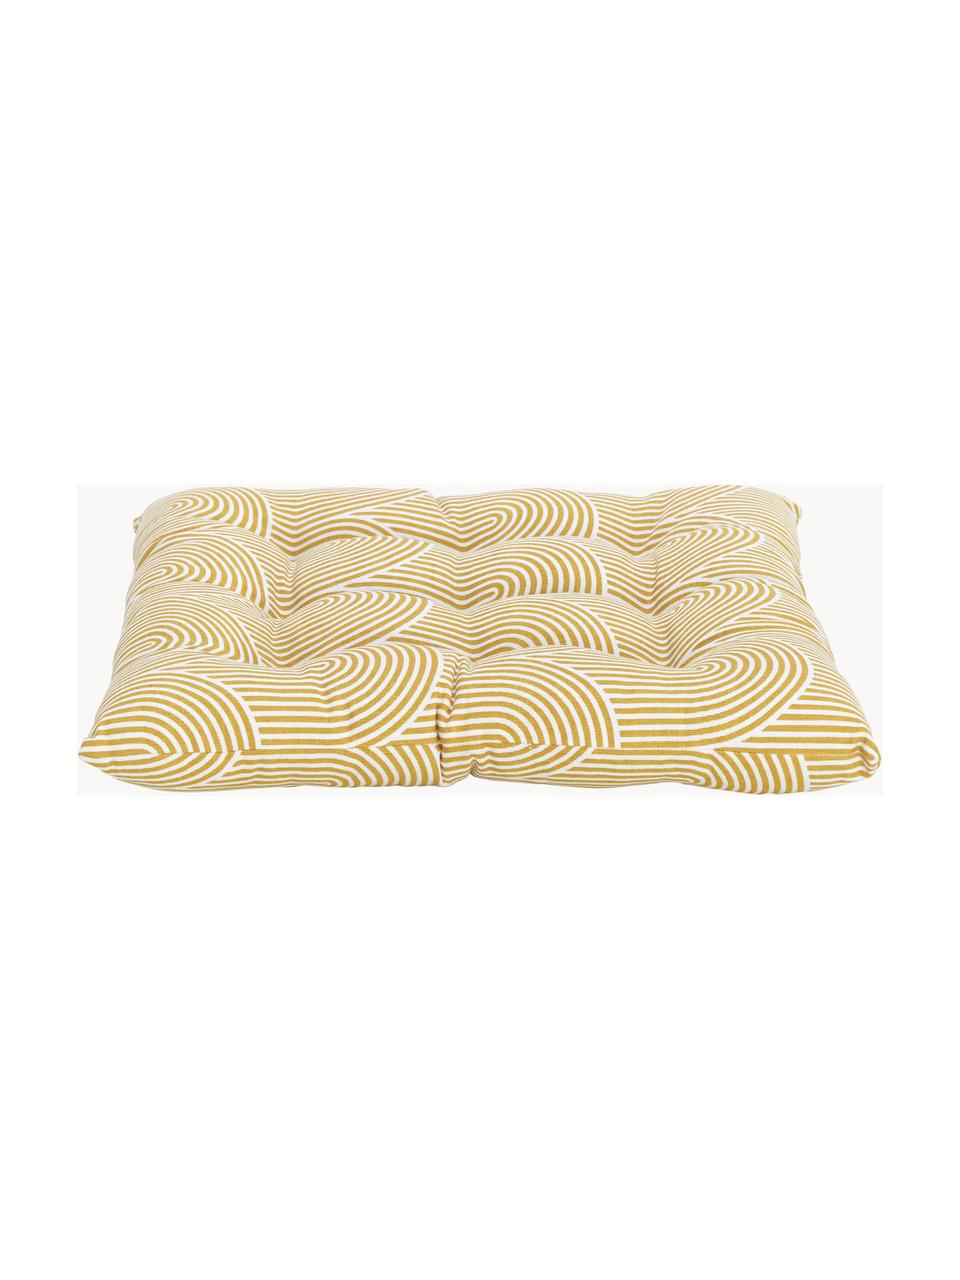 Cuscino sedia in cotone giallo/bianco Arc, Rivestimento: 100% cotone, Giallo, Larg. 40 x Lung. 40 cm